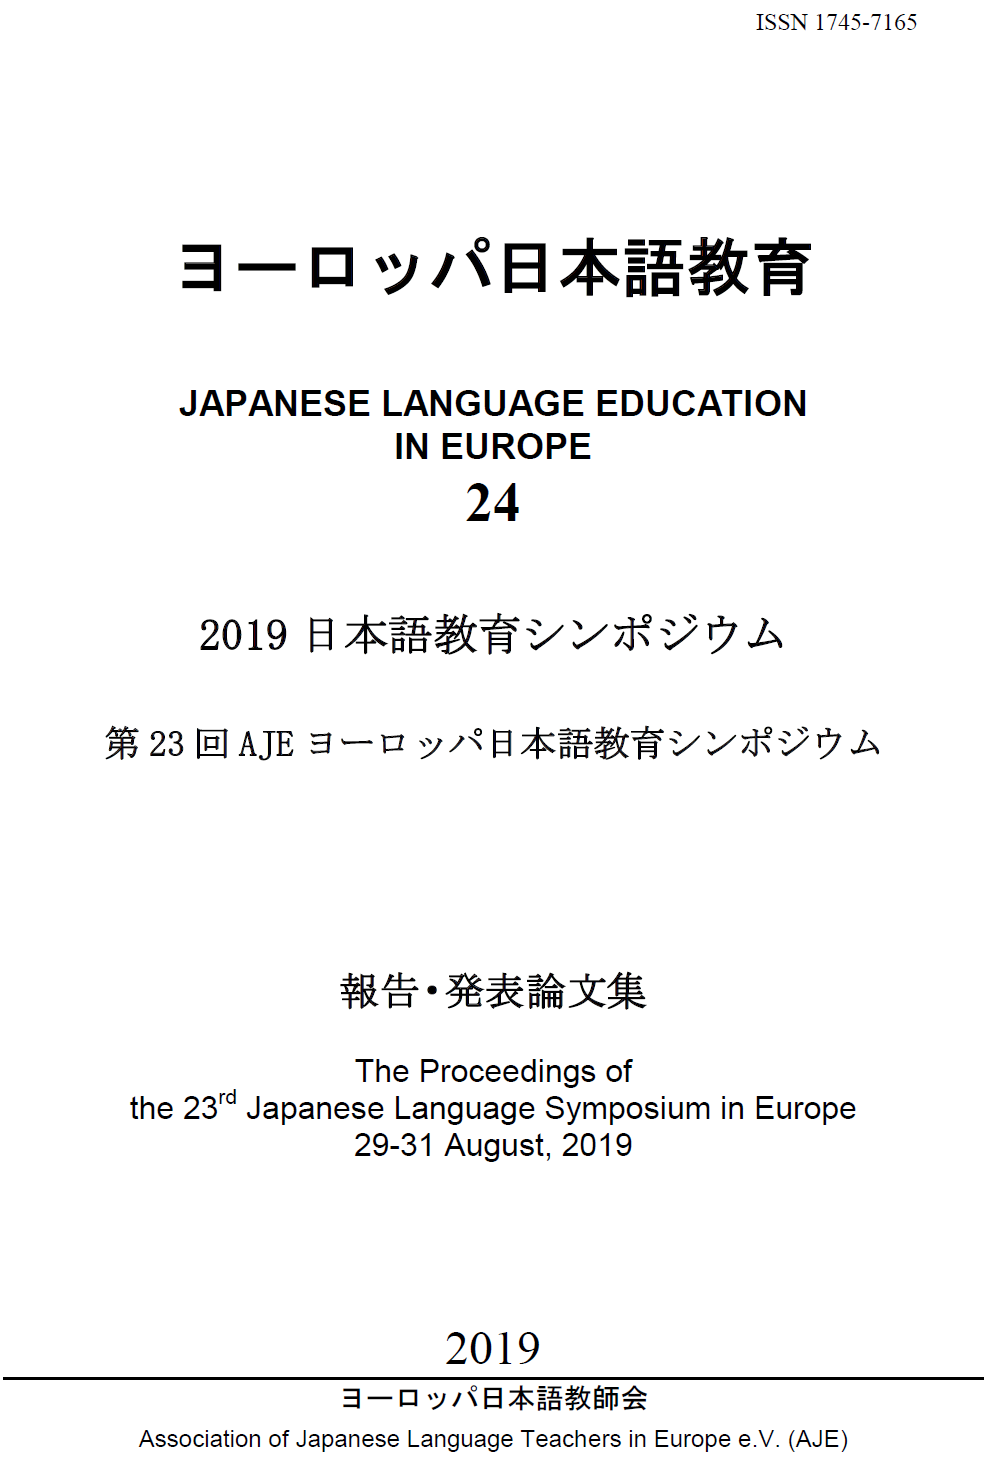 ヨーロッパ日本語教師会 Aje